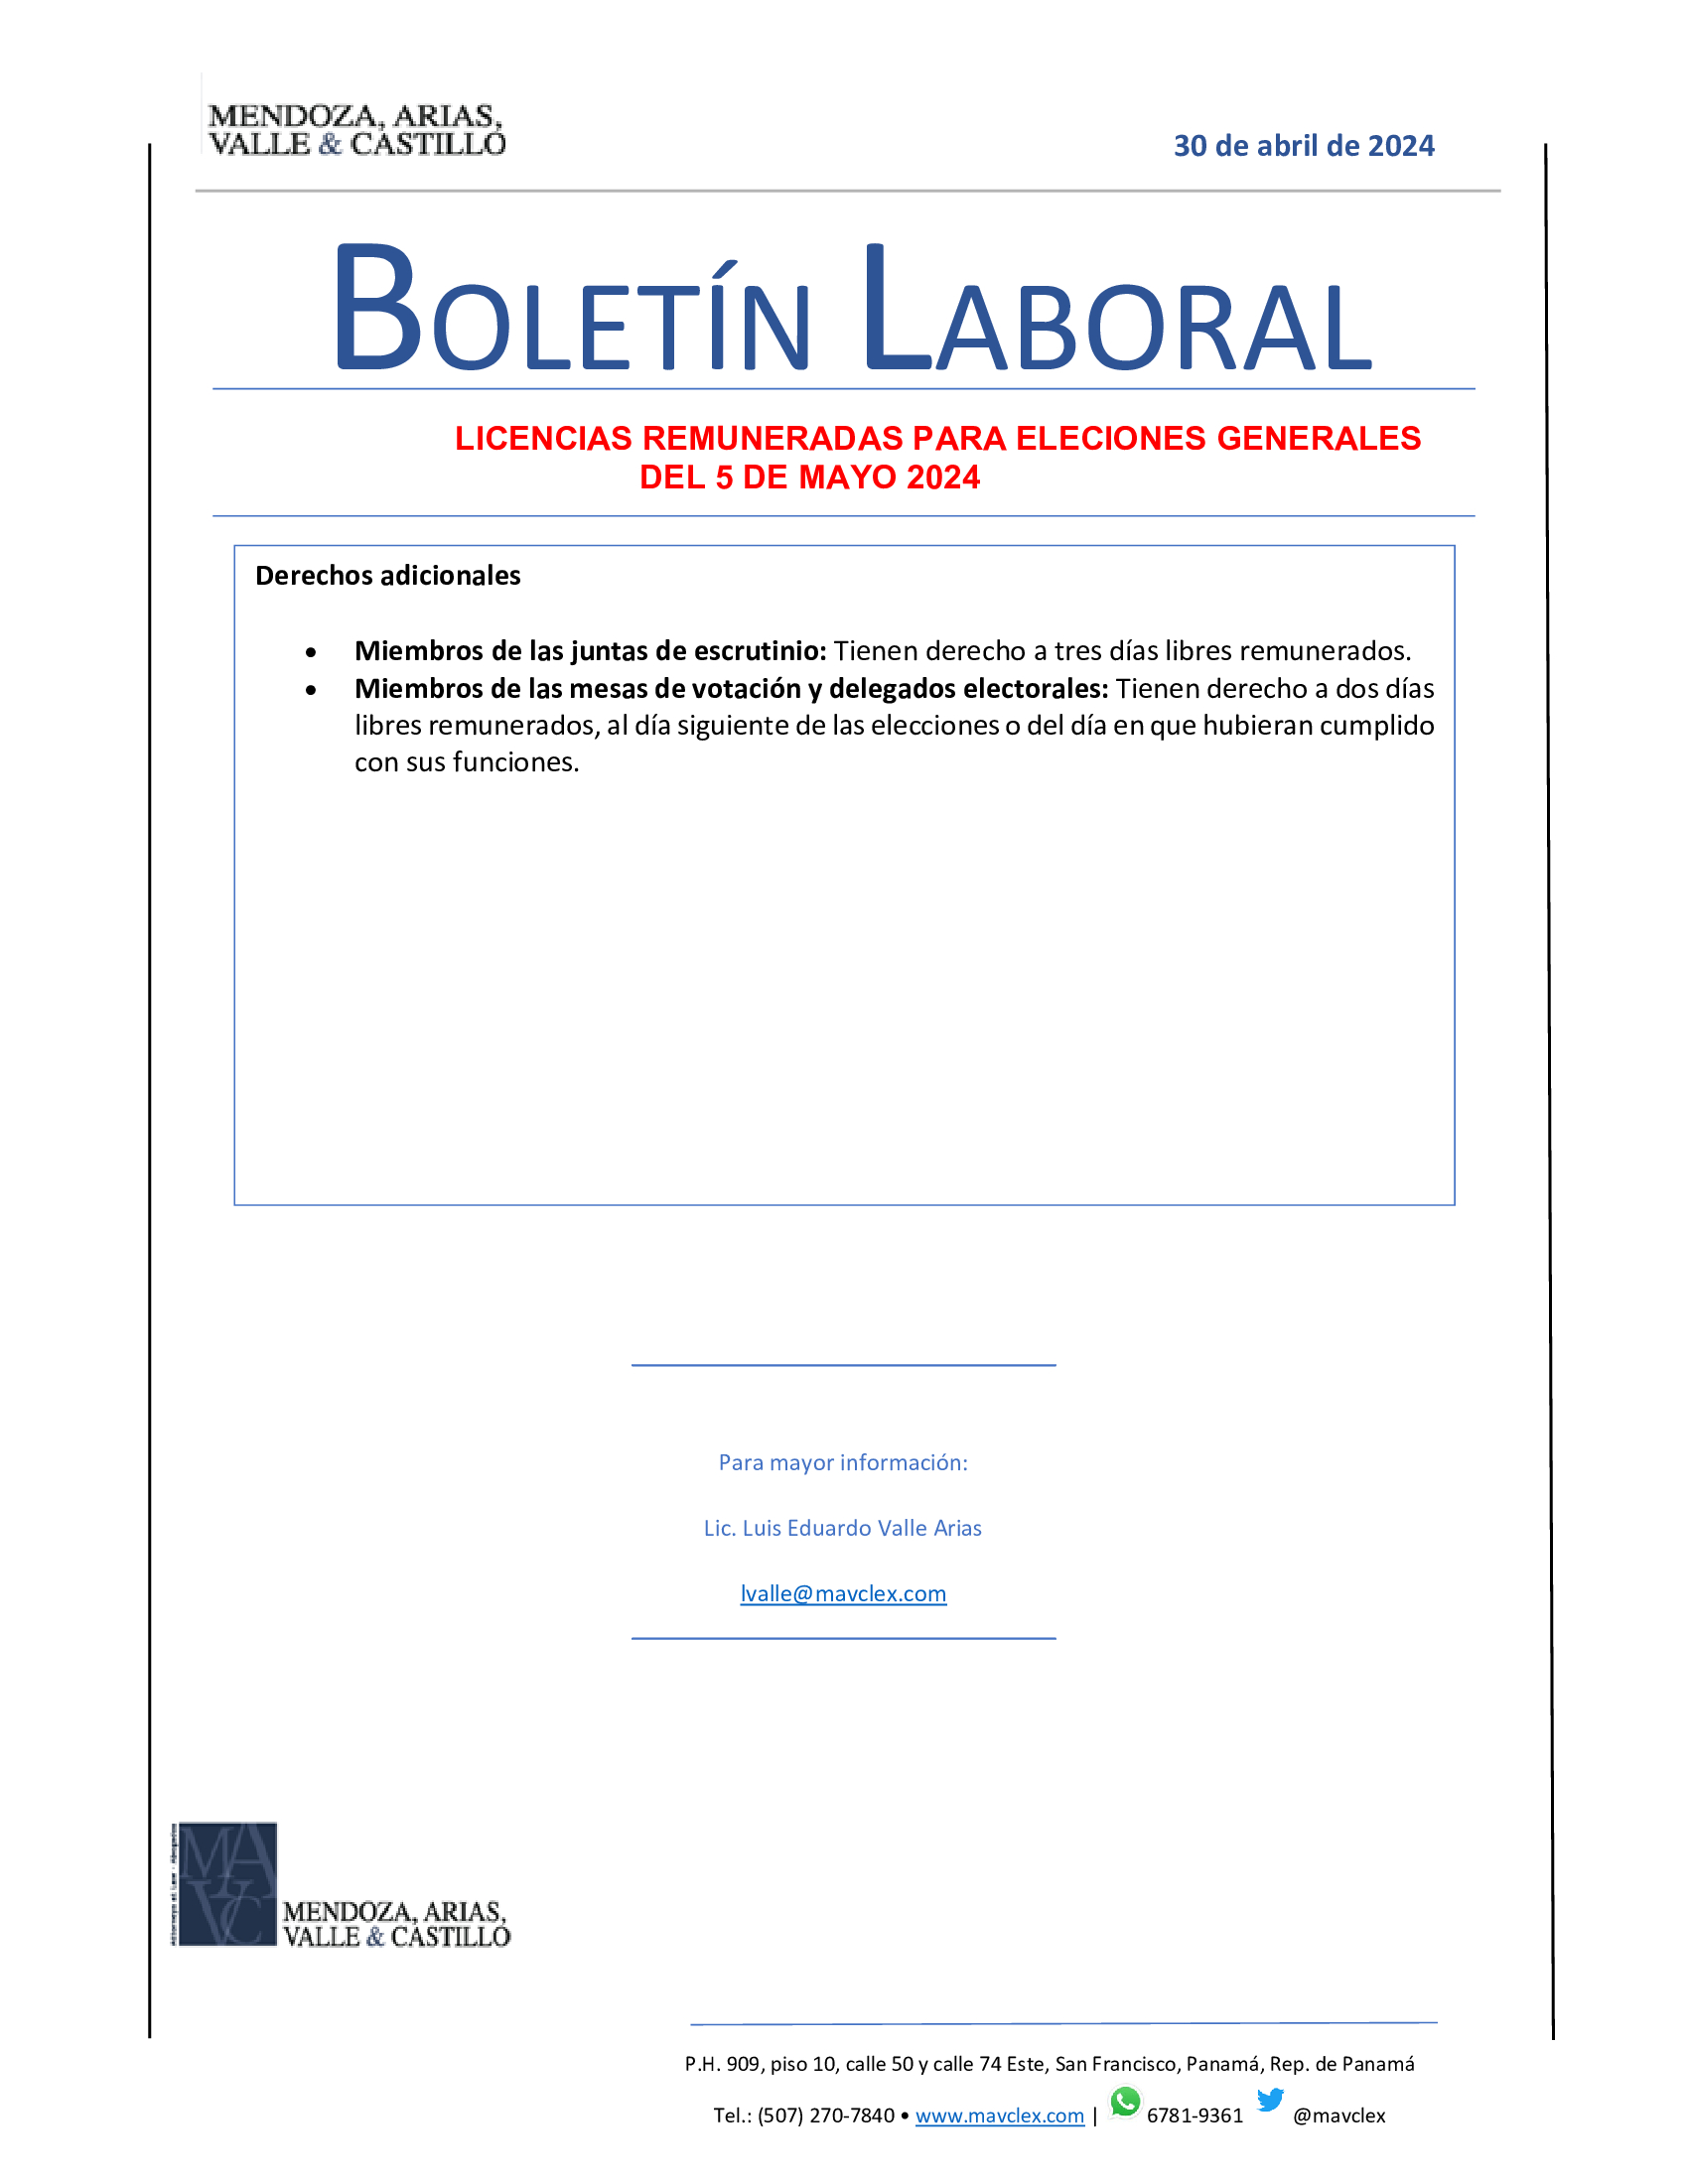 BOLETIN-LABORAL-30-de-abril-de-2024-LICENCIAS-REMUNERADAS-PARA-ELECCIONES-GENERALES (1)